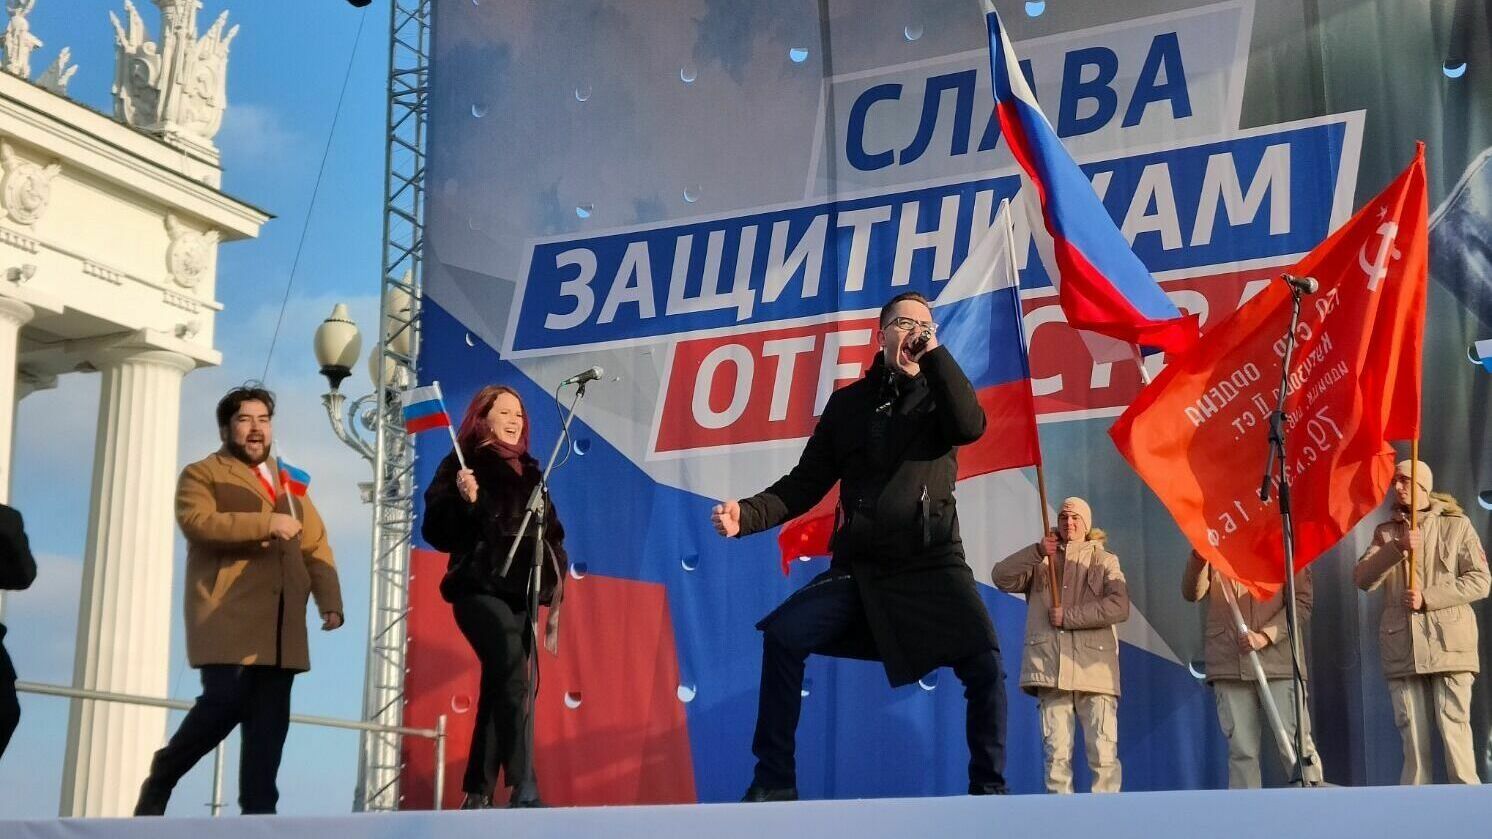 Песни, флаги и контракт: чем запомнился февральский митинг в Волгограде